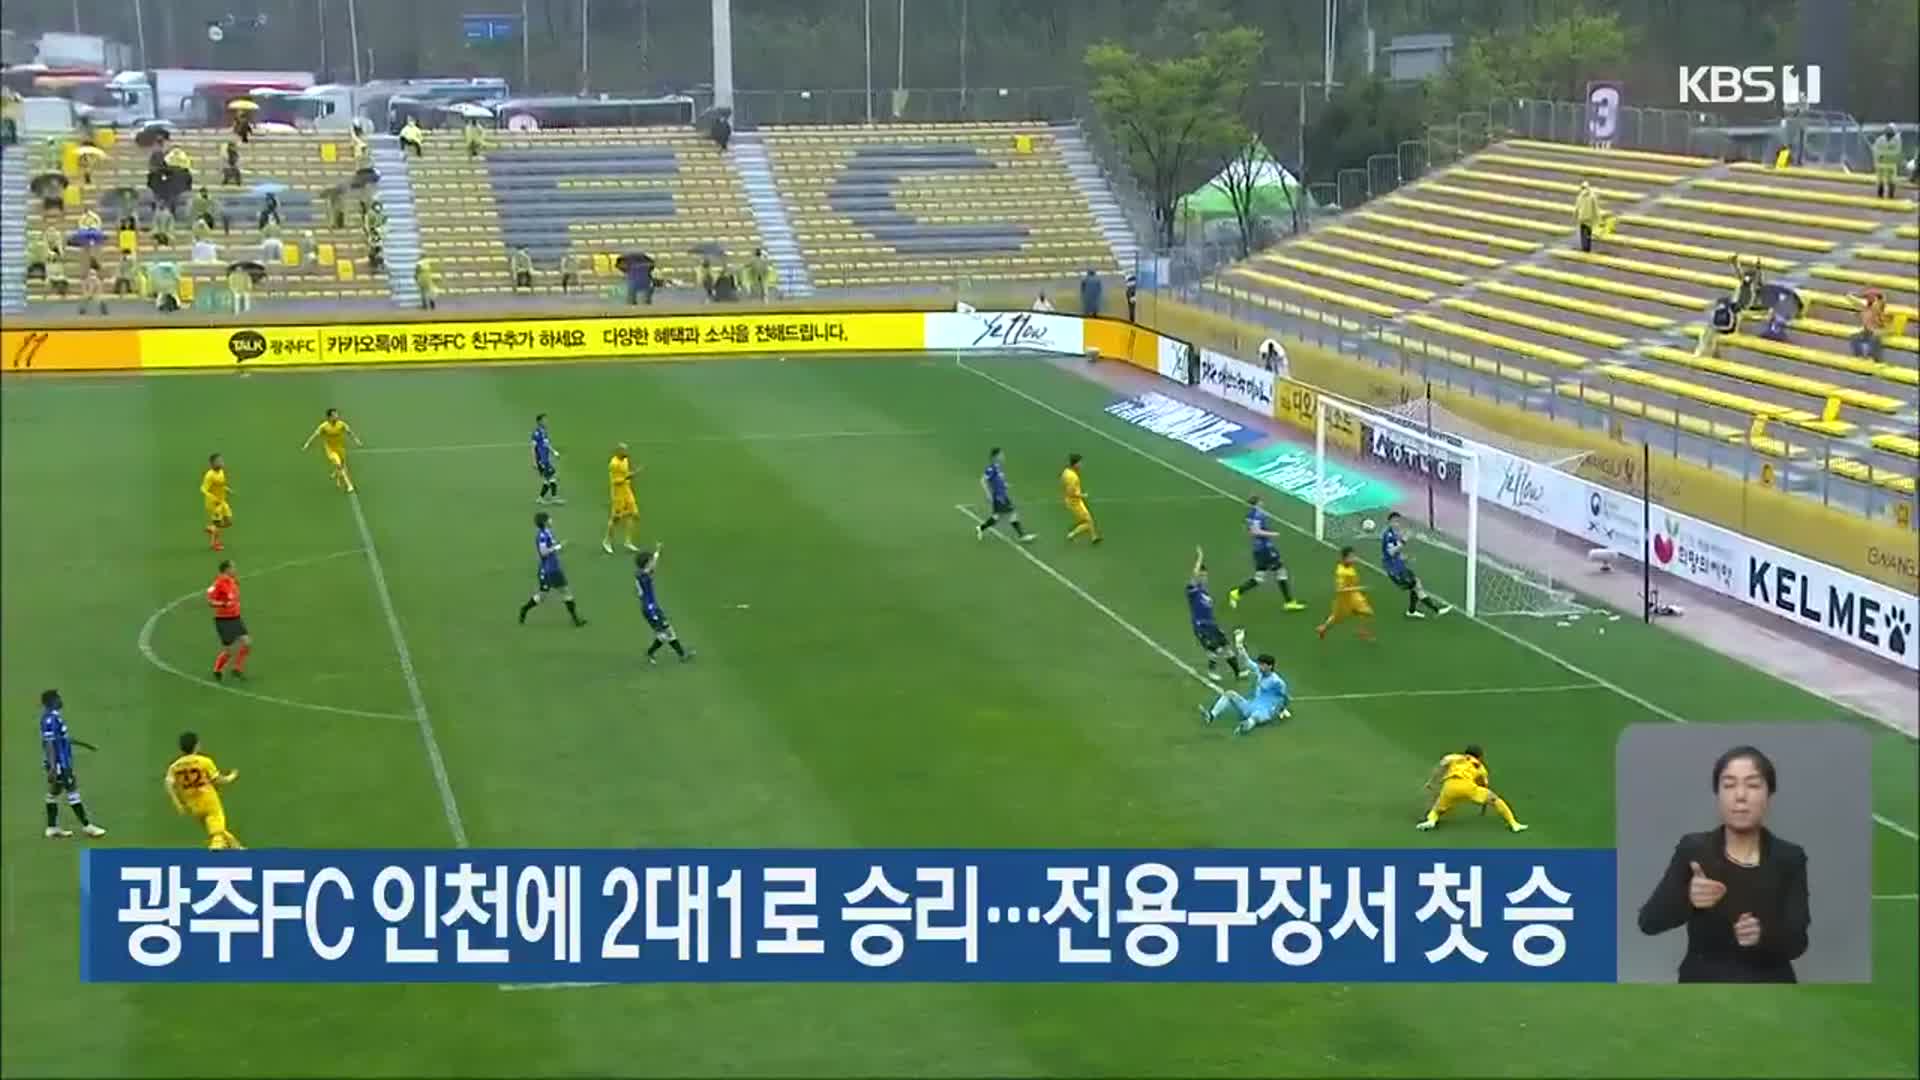 광주FC 인천에 2대1로 승리…전용구장서 첫 승